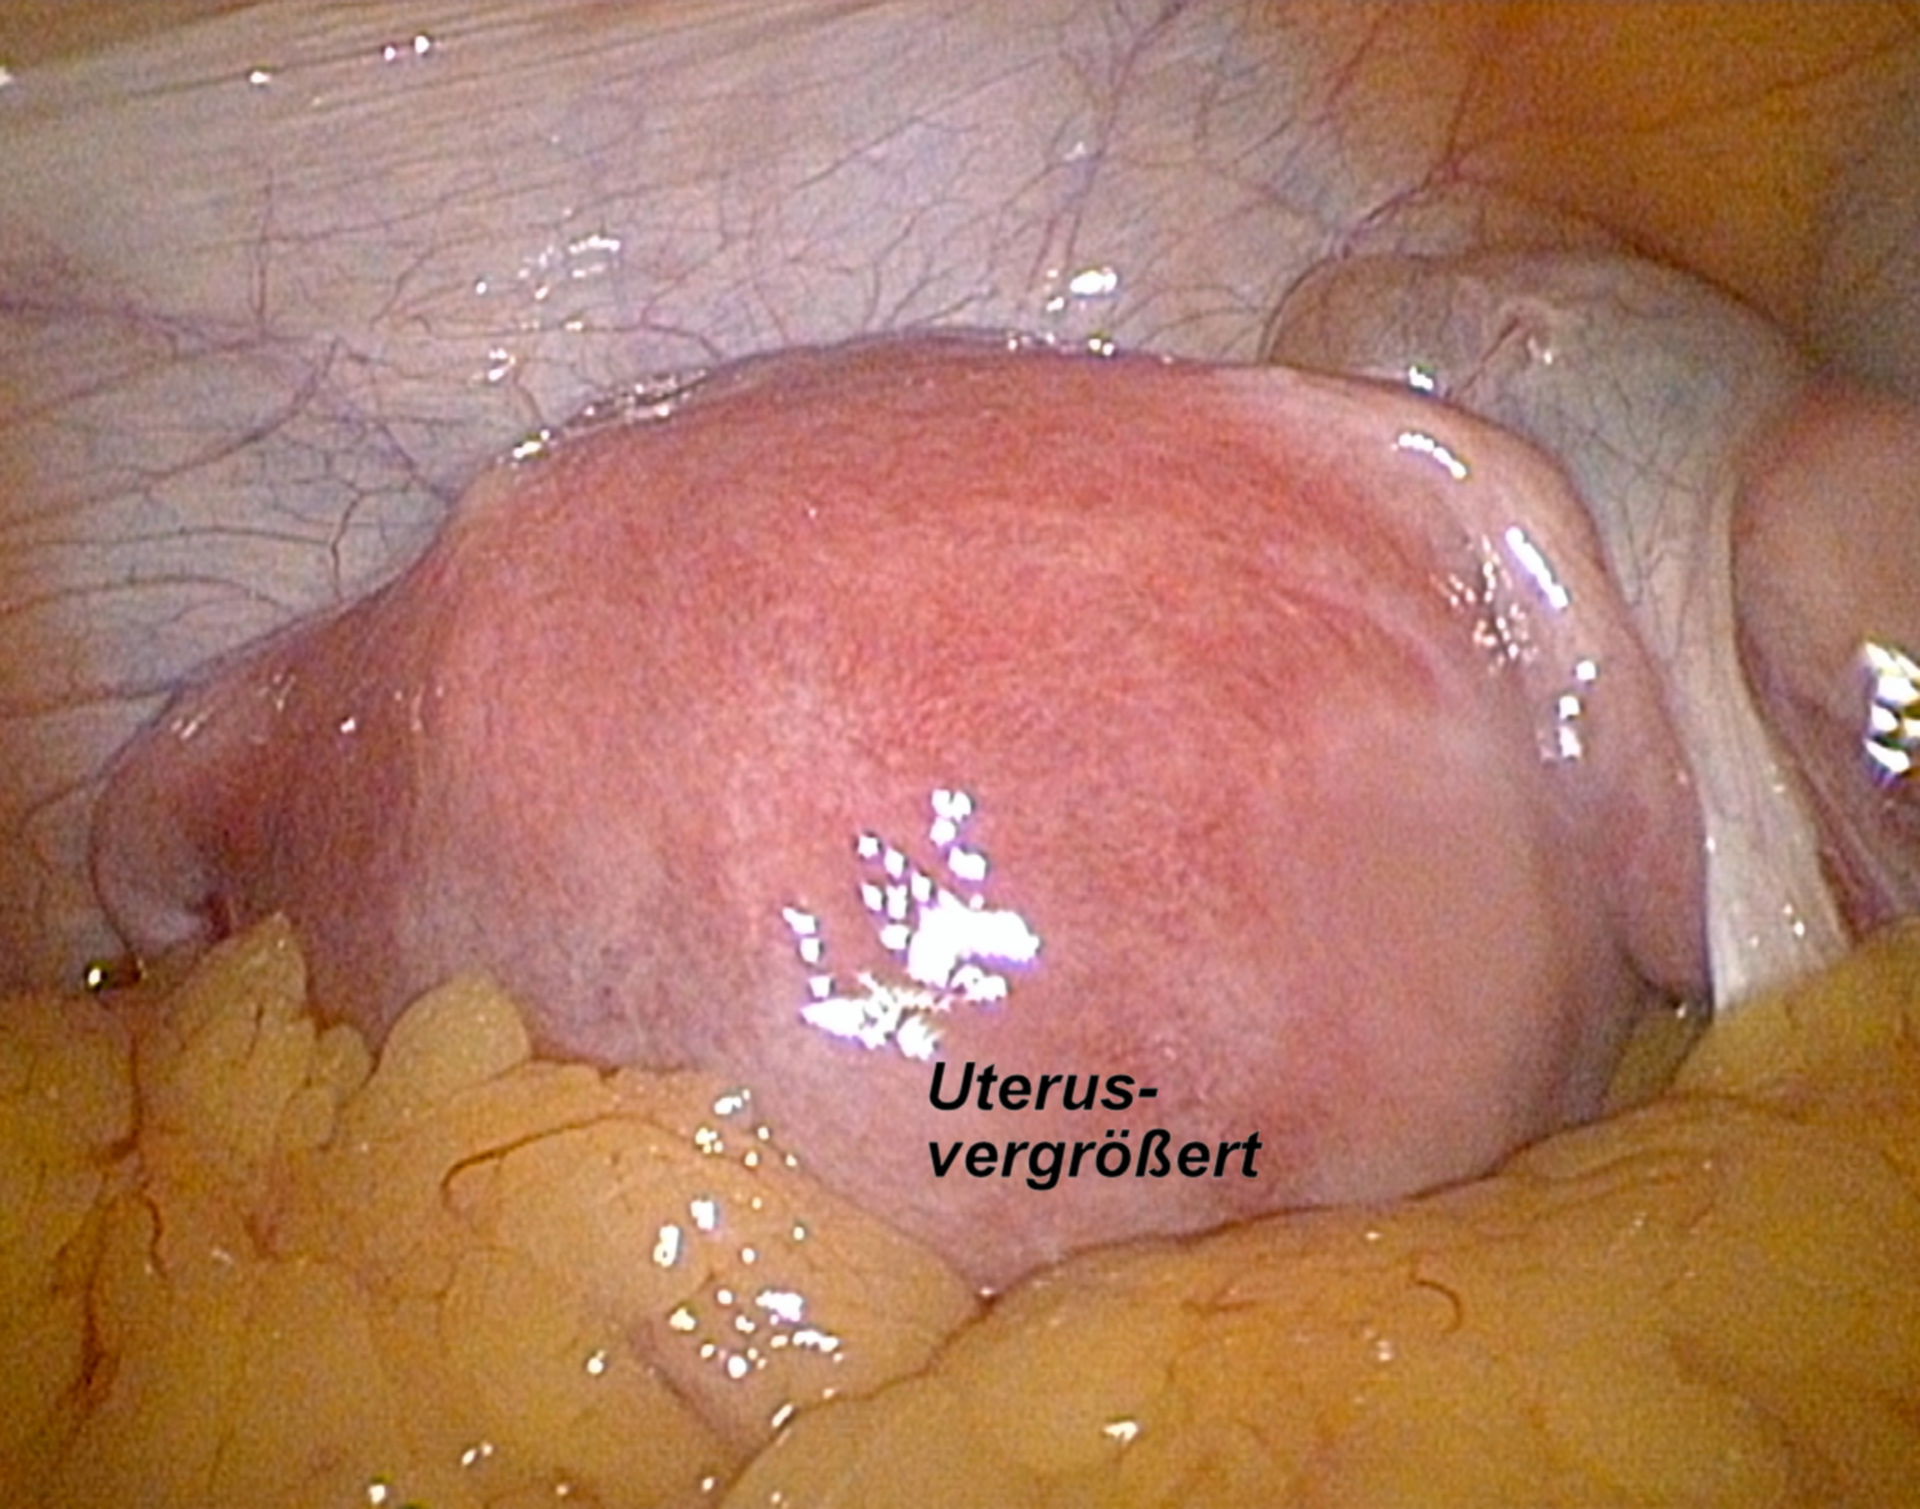 Laparoskopy - Uterus